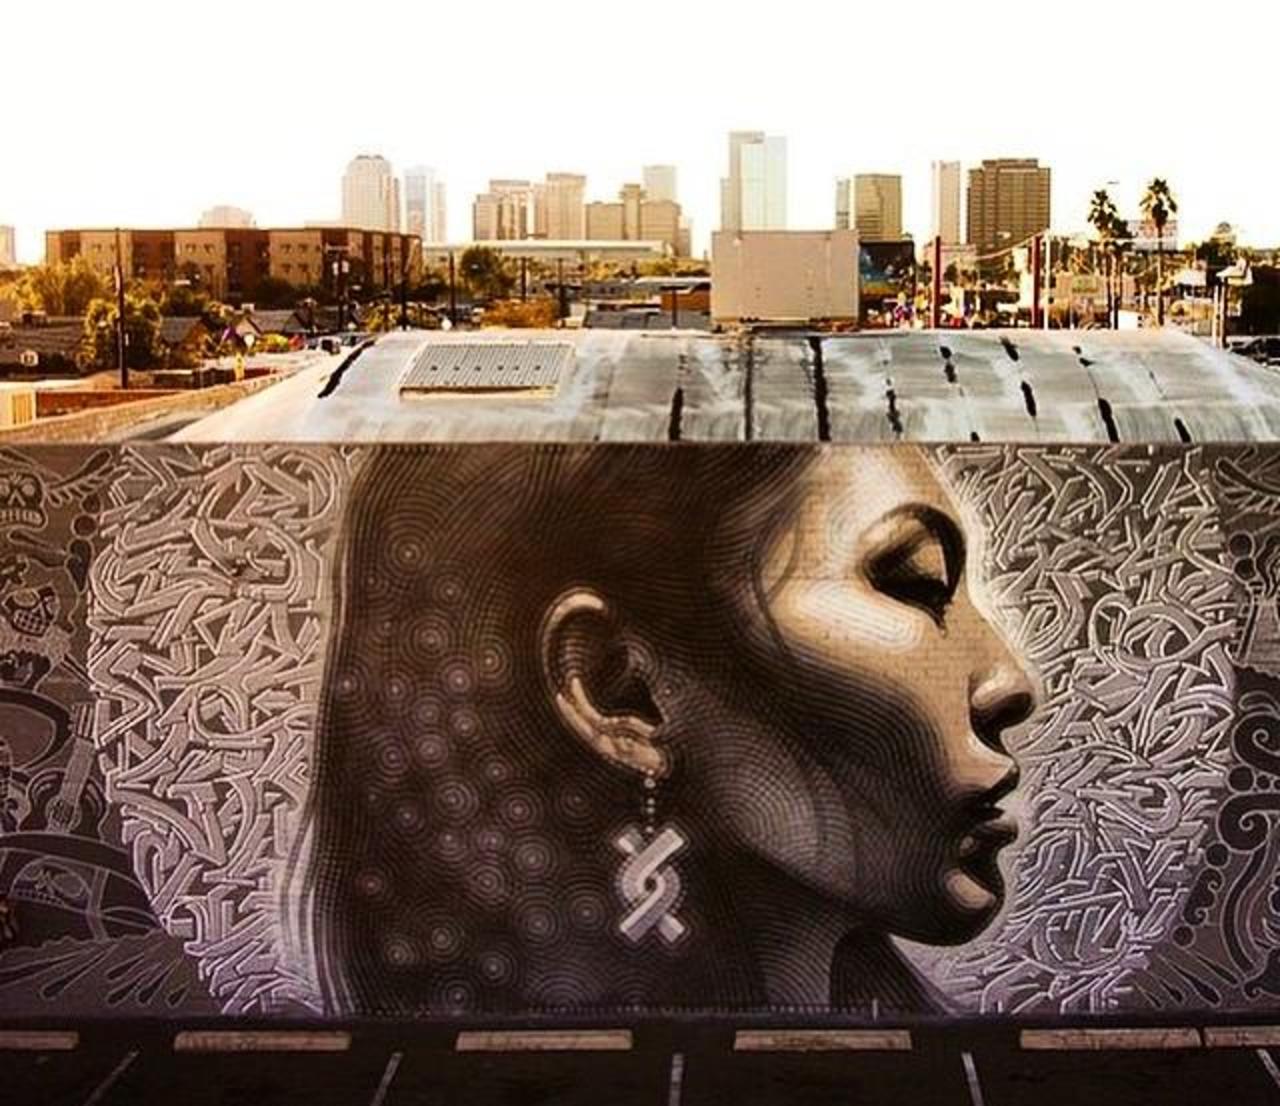 Latest Street Art work by El Mac in Phoenix, Arizona

#art #mural #graffiti #streetart http://t.co/3OZOZyON0Z